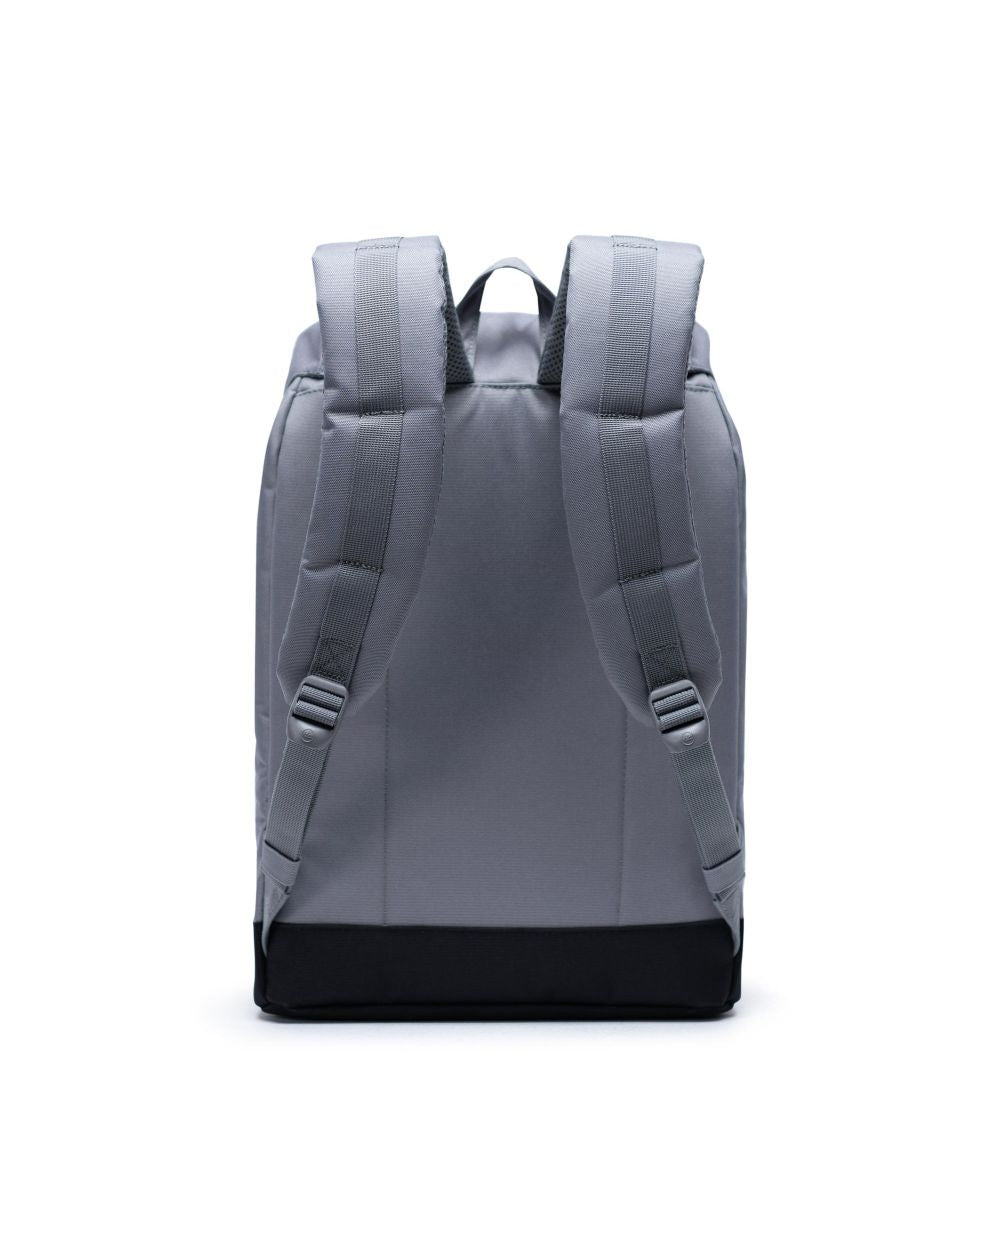 Herschel Supply Co. - Retreat Backpack, Grey/Black